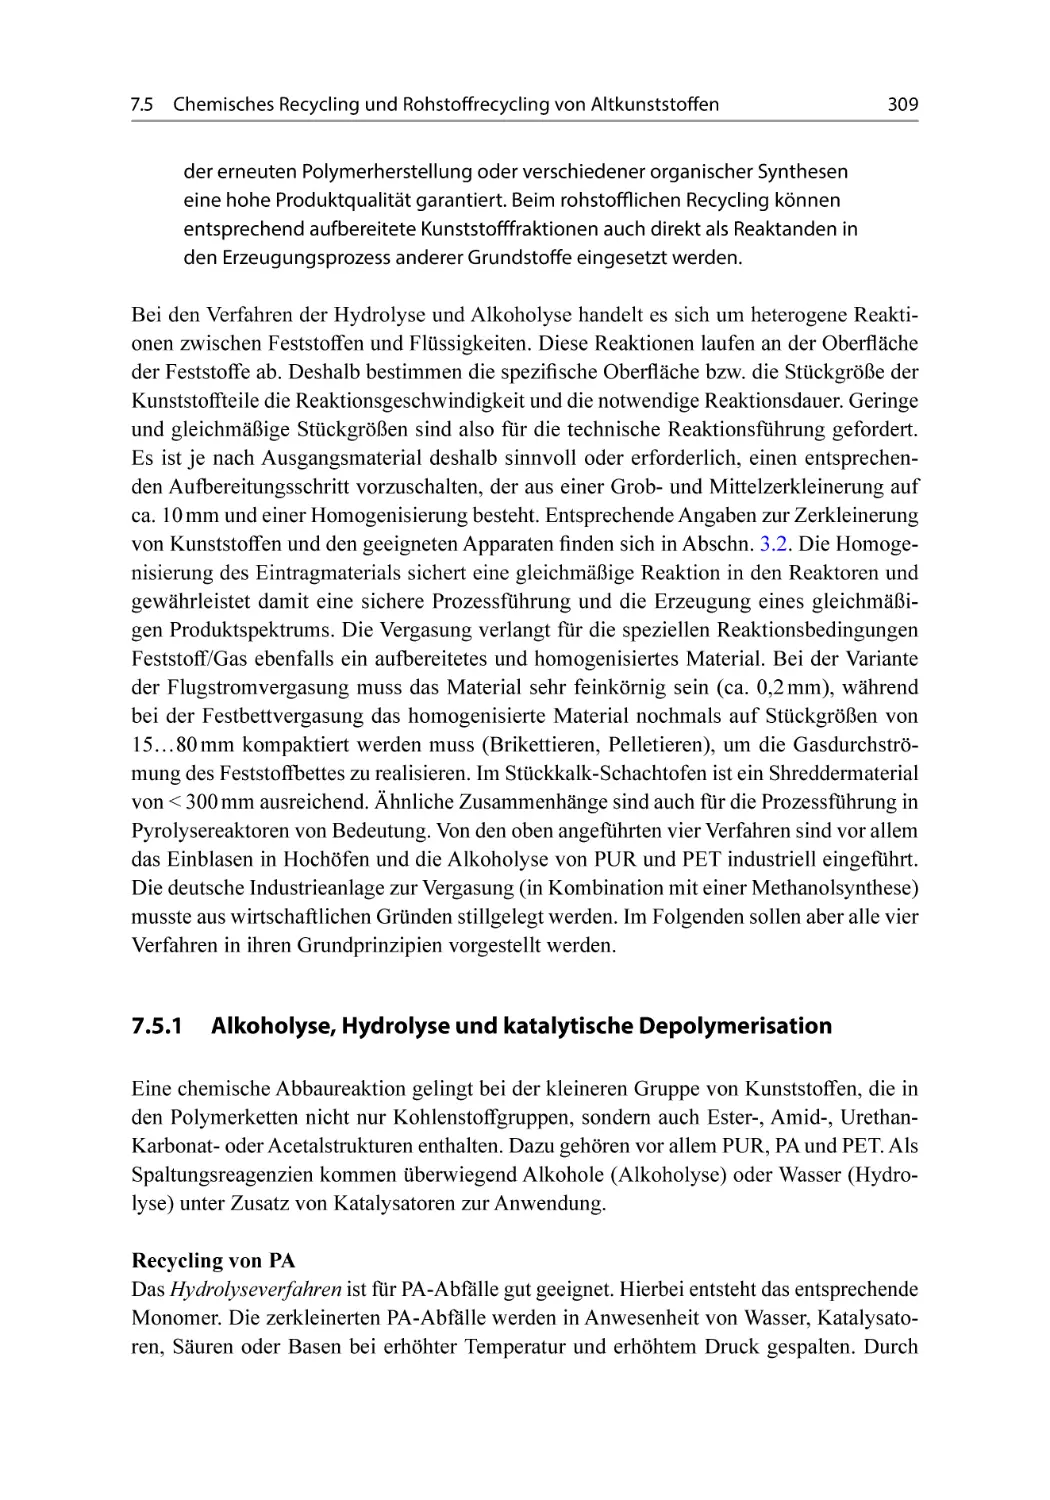 7.5.1 Alkoholyse, Hydrolyse und katalytische Depolymerisation